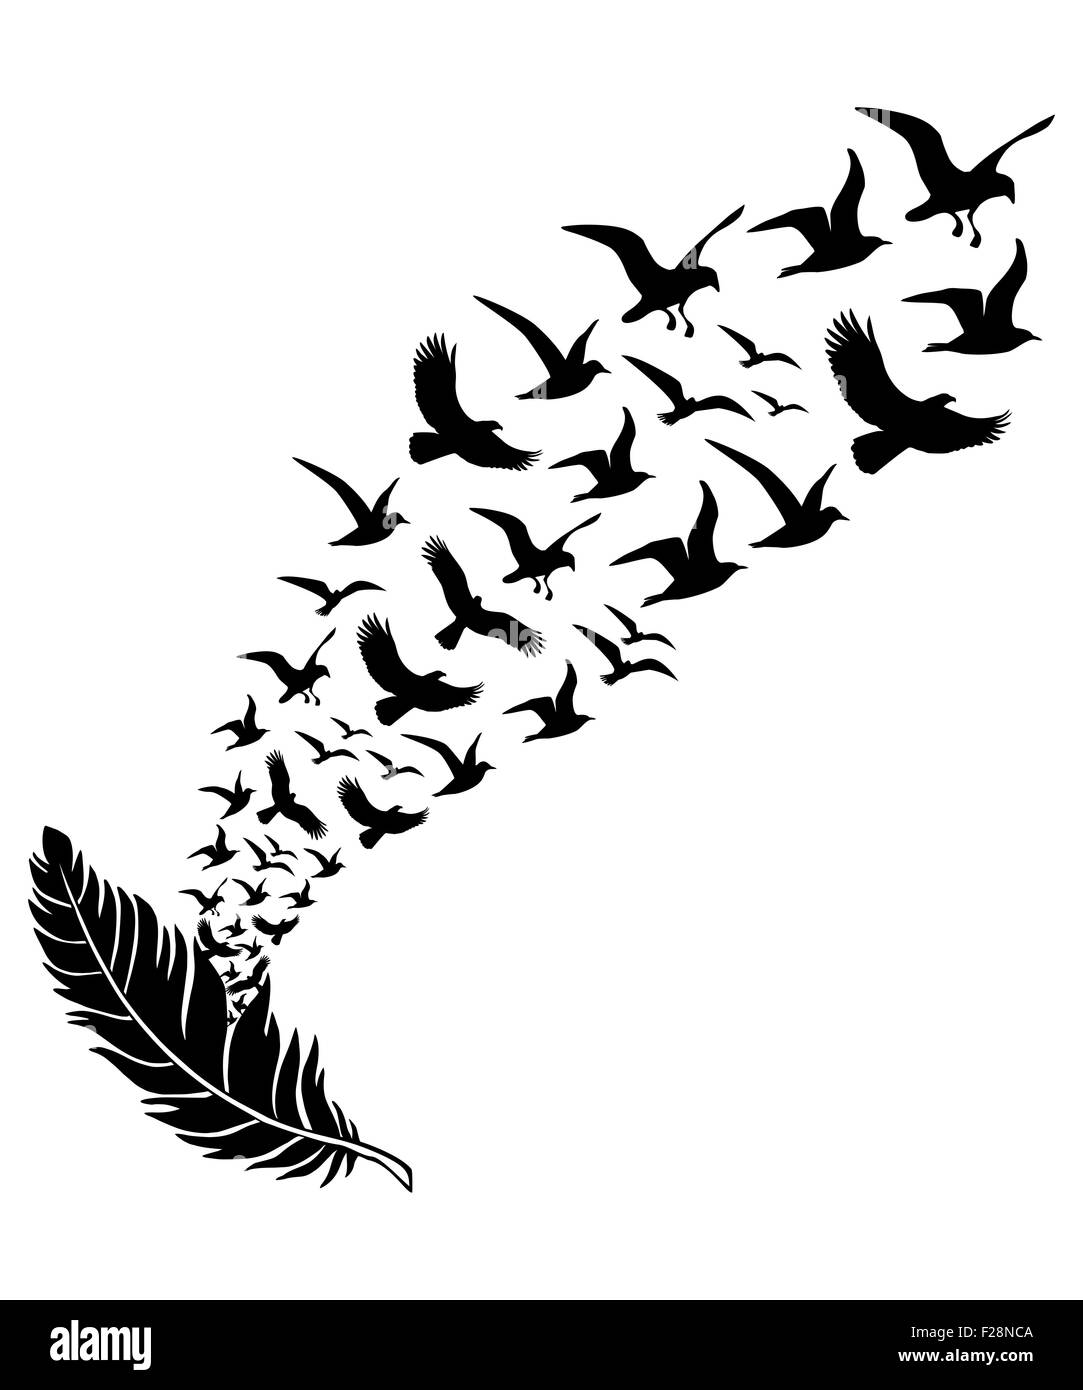 Federn mit fliegenden Vögel, Vektor-illustration Stockfoto